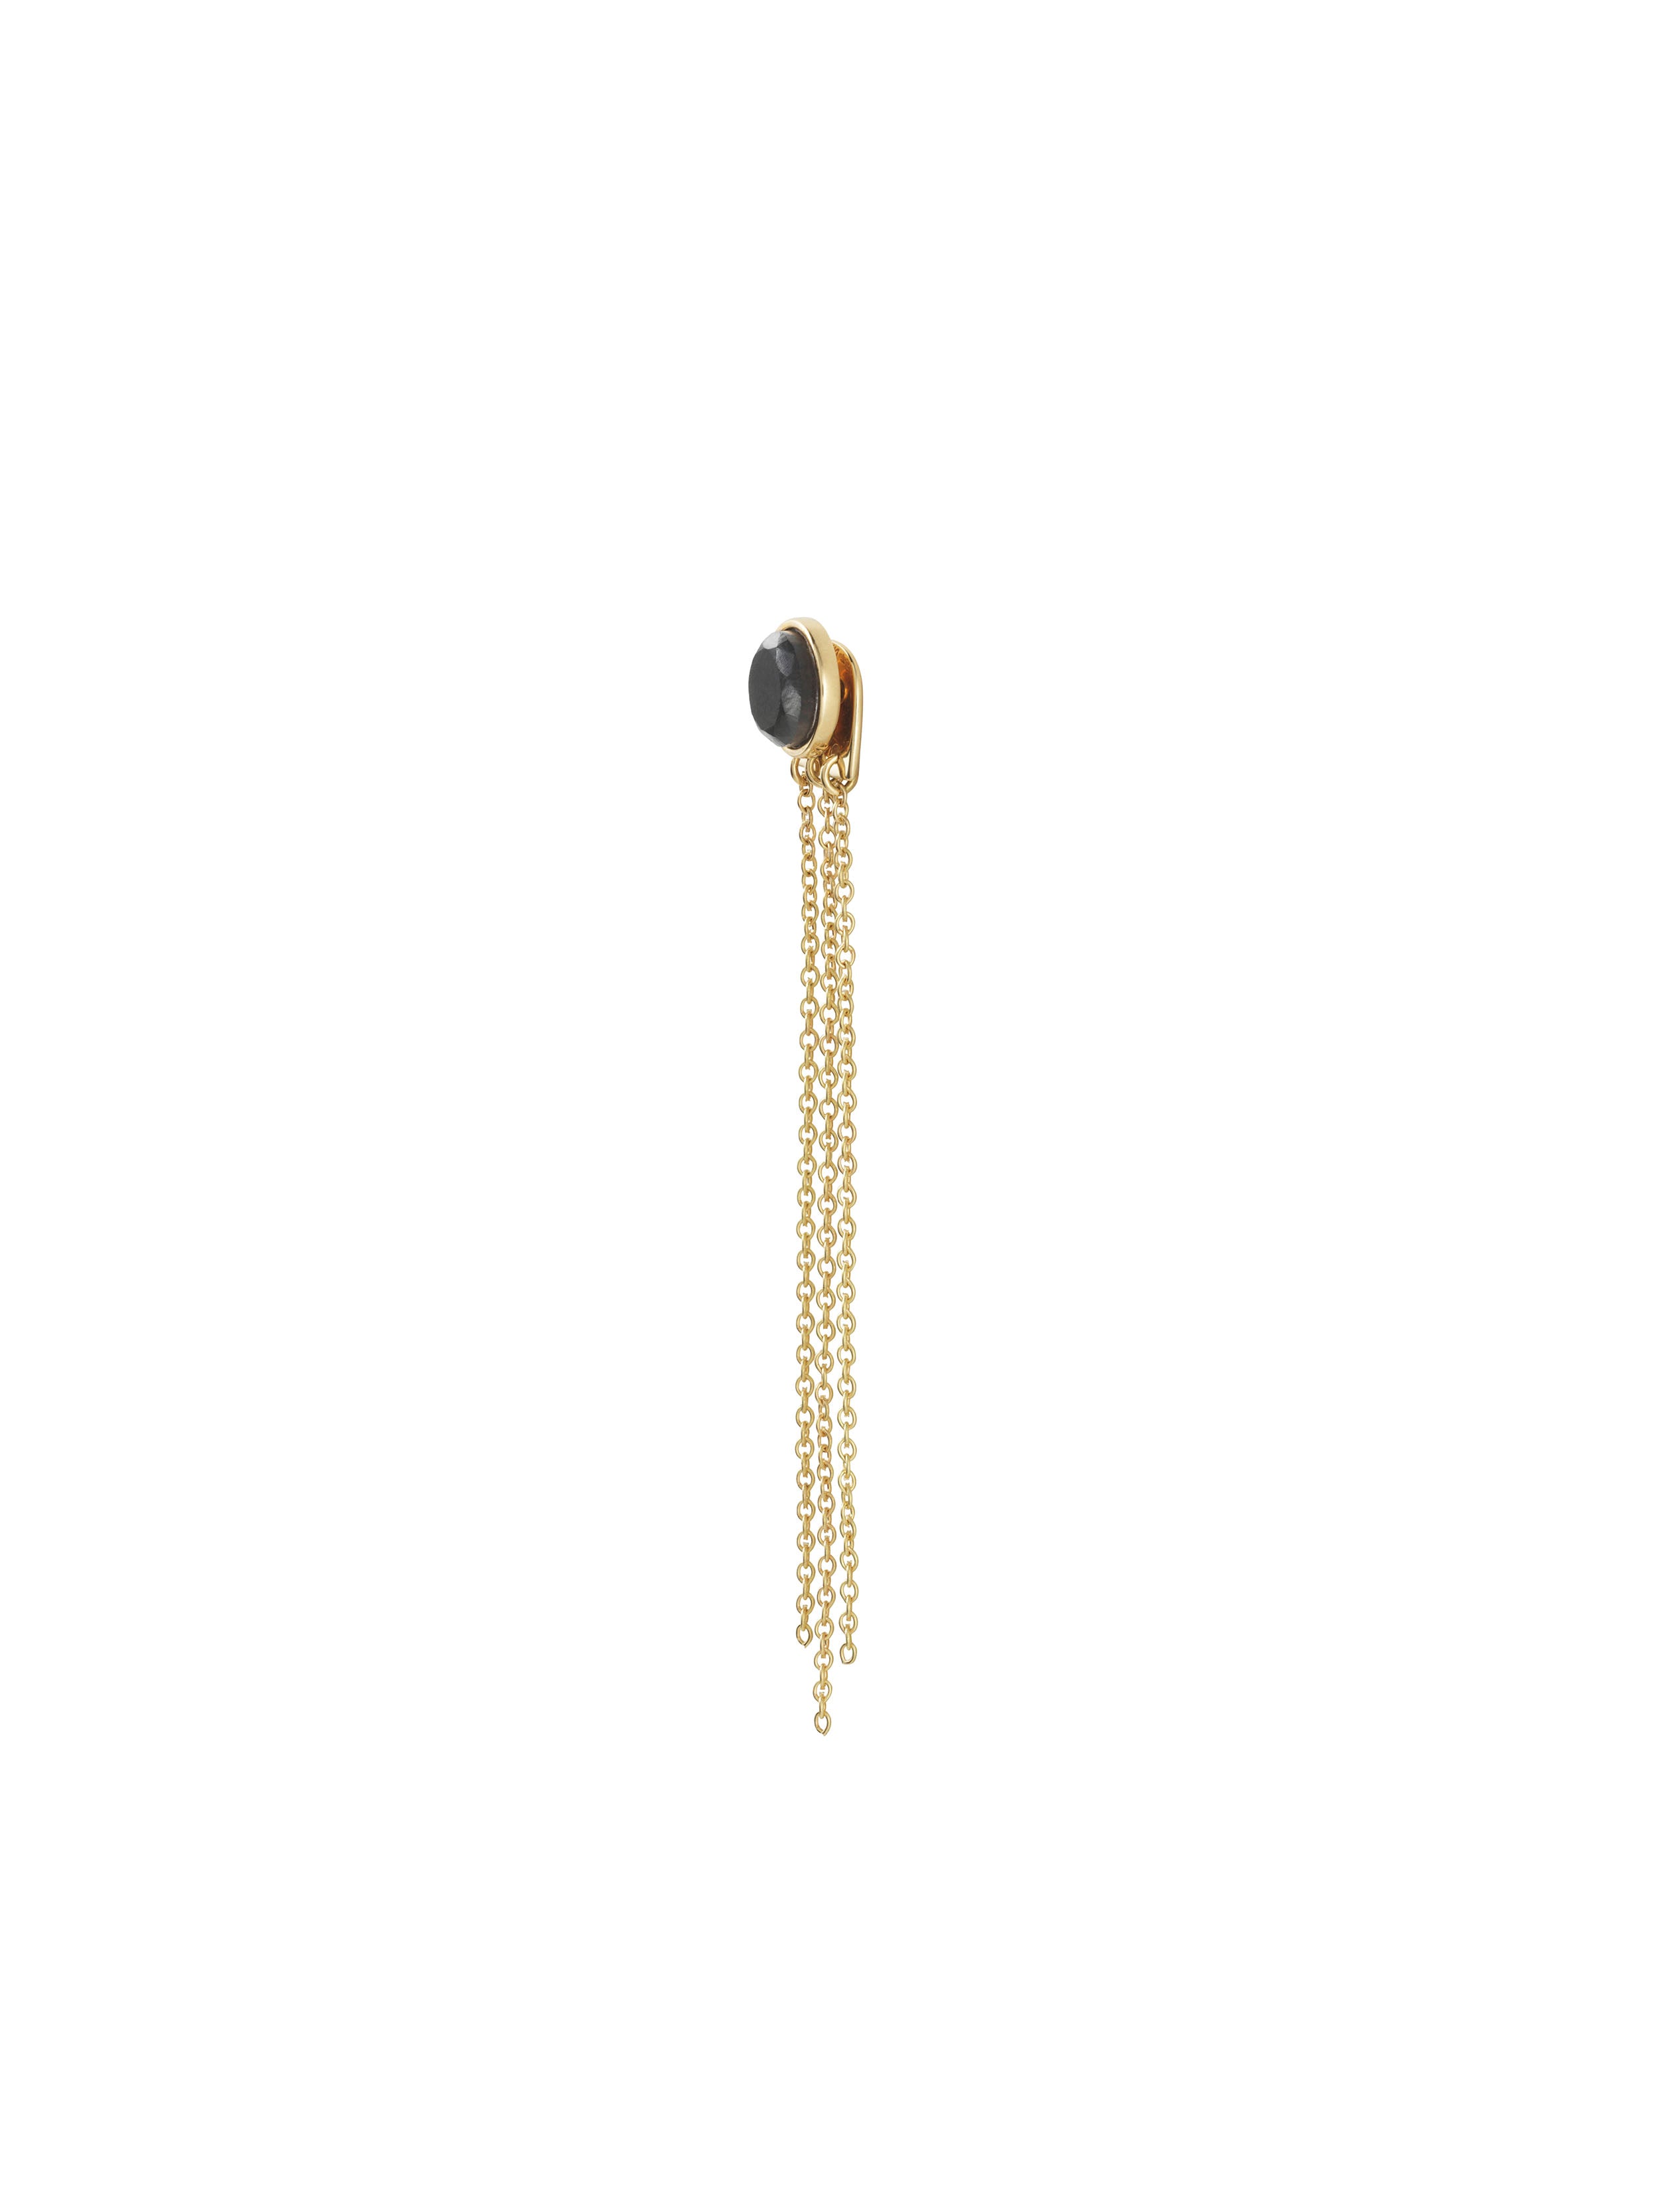 KINRADEN APS I TASTE Earring - 18k gold Earrings